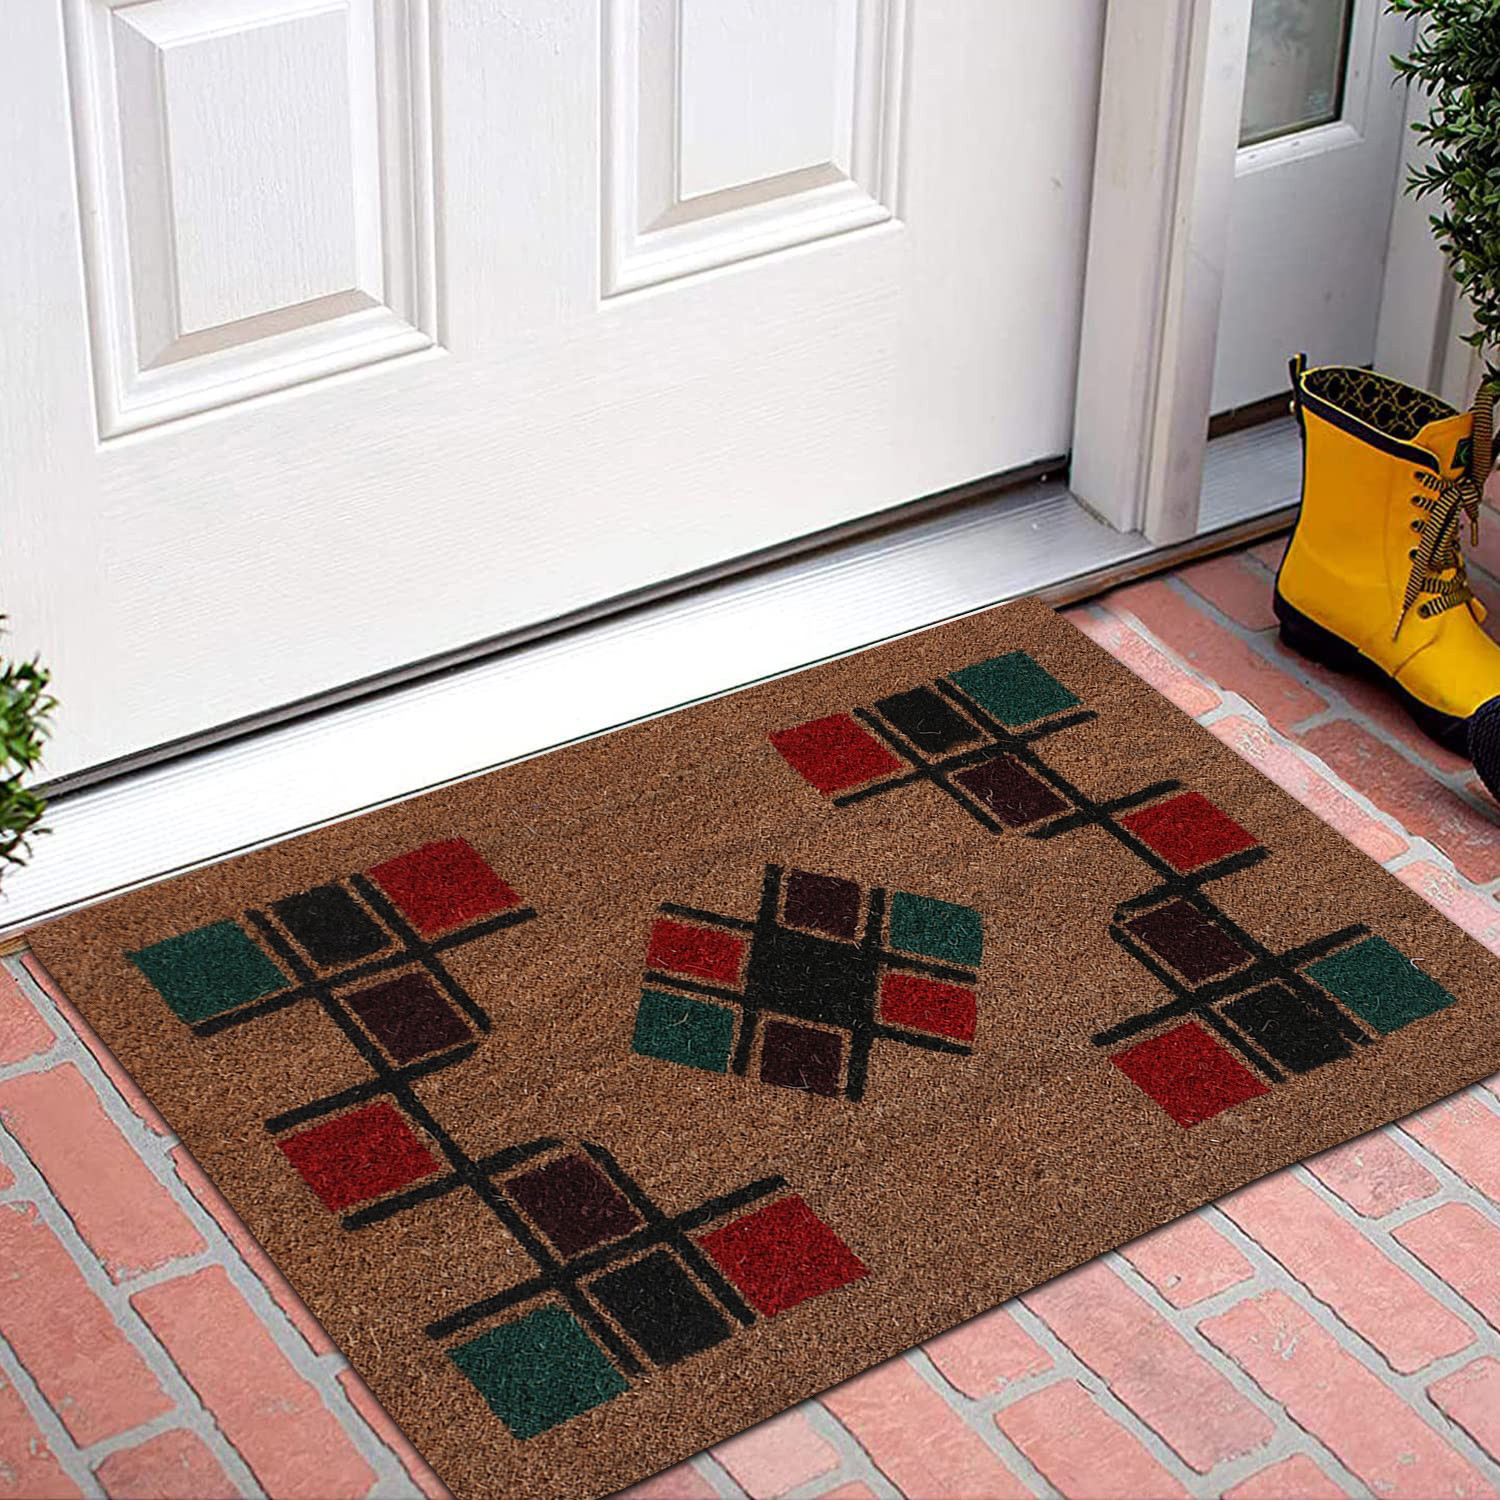 Kuber Industries Door Mat|Polyethylene Durable & Anti-Slip Natural Block Print Floor Mat|Rug For Indoor or Outdoor, 30x20 Inch (Brown)